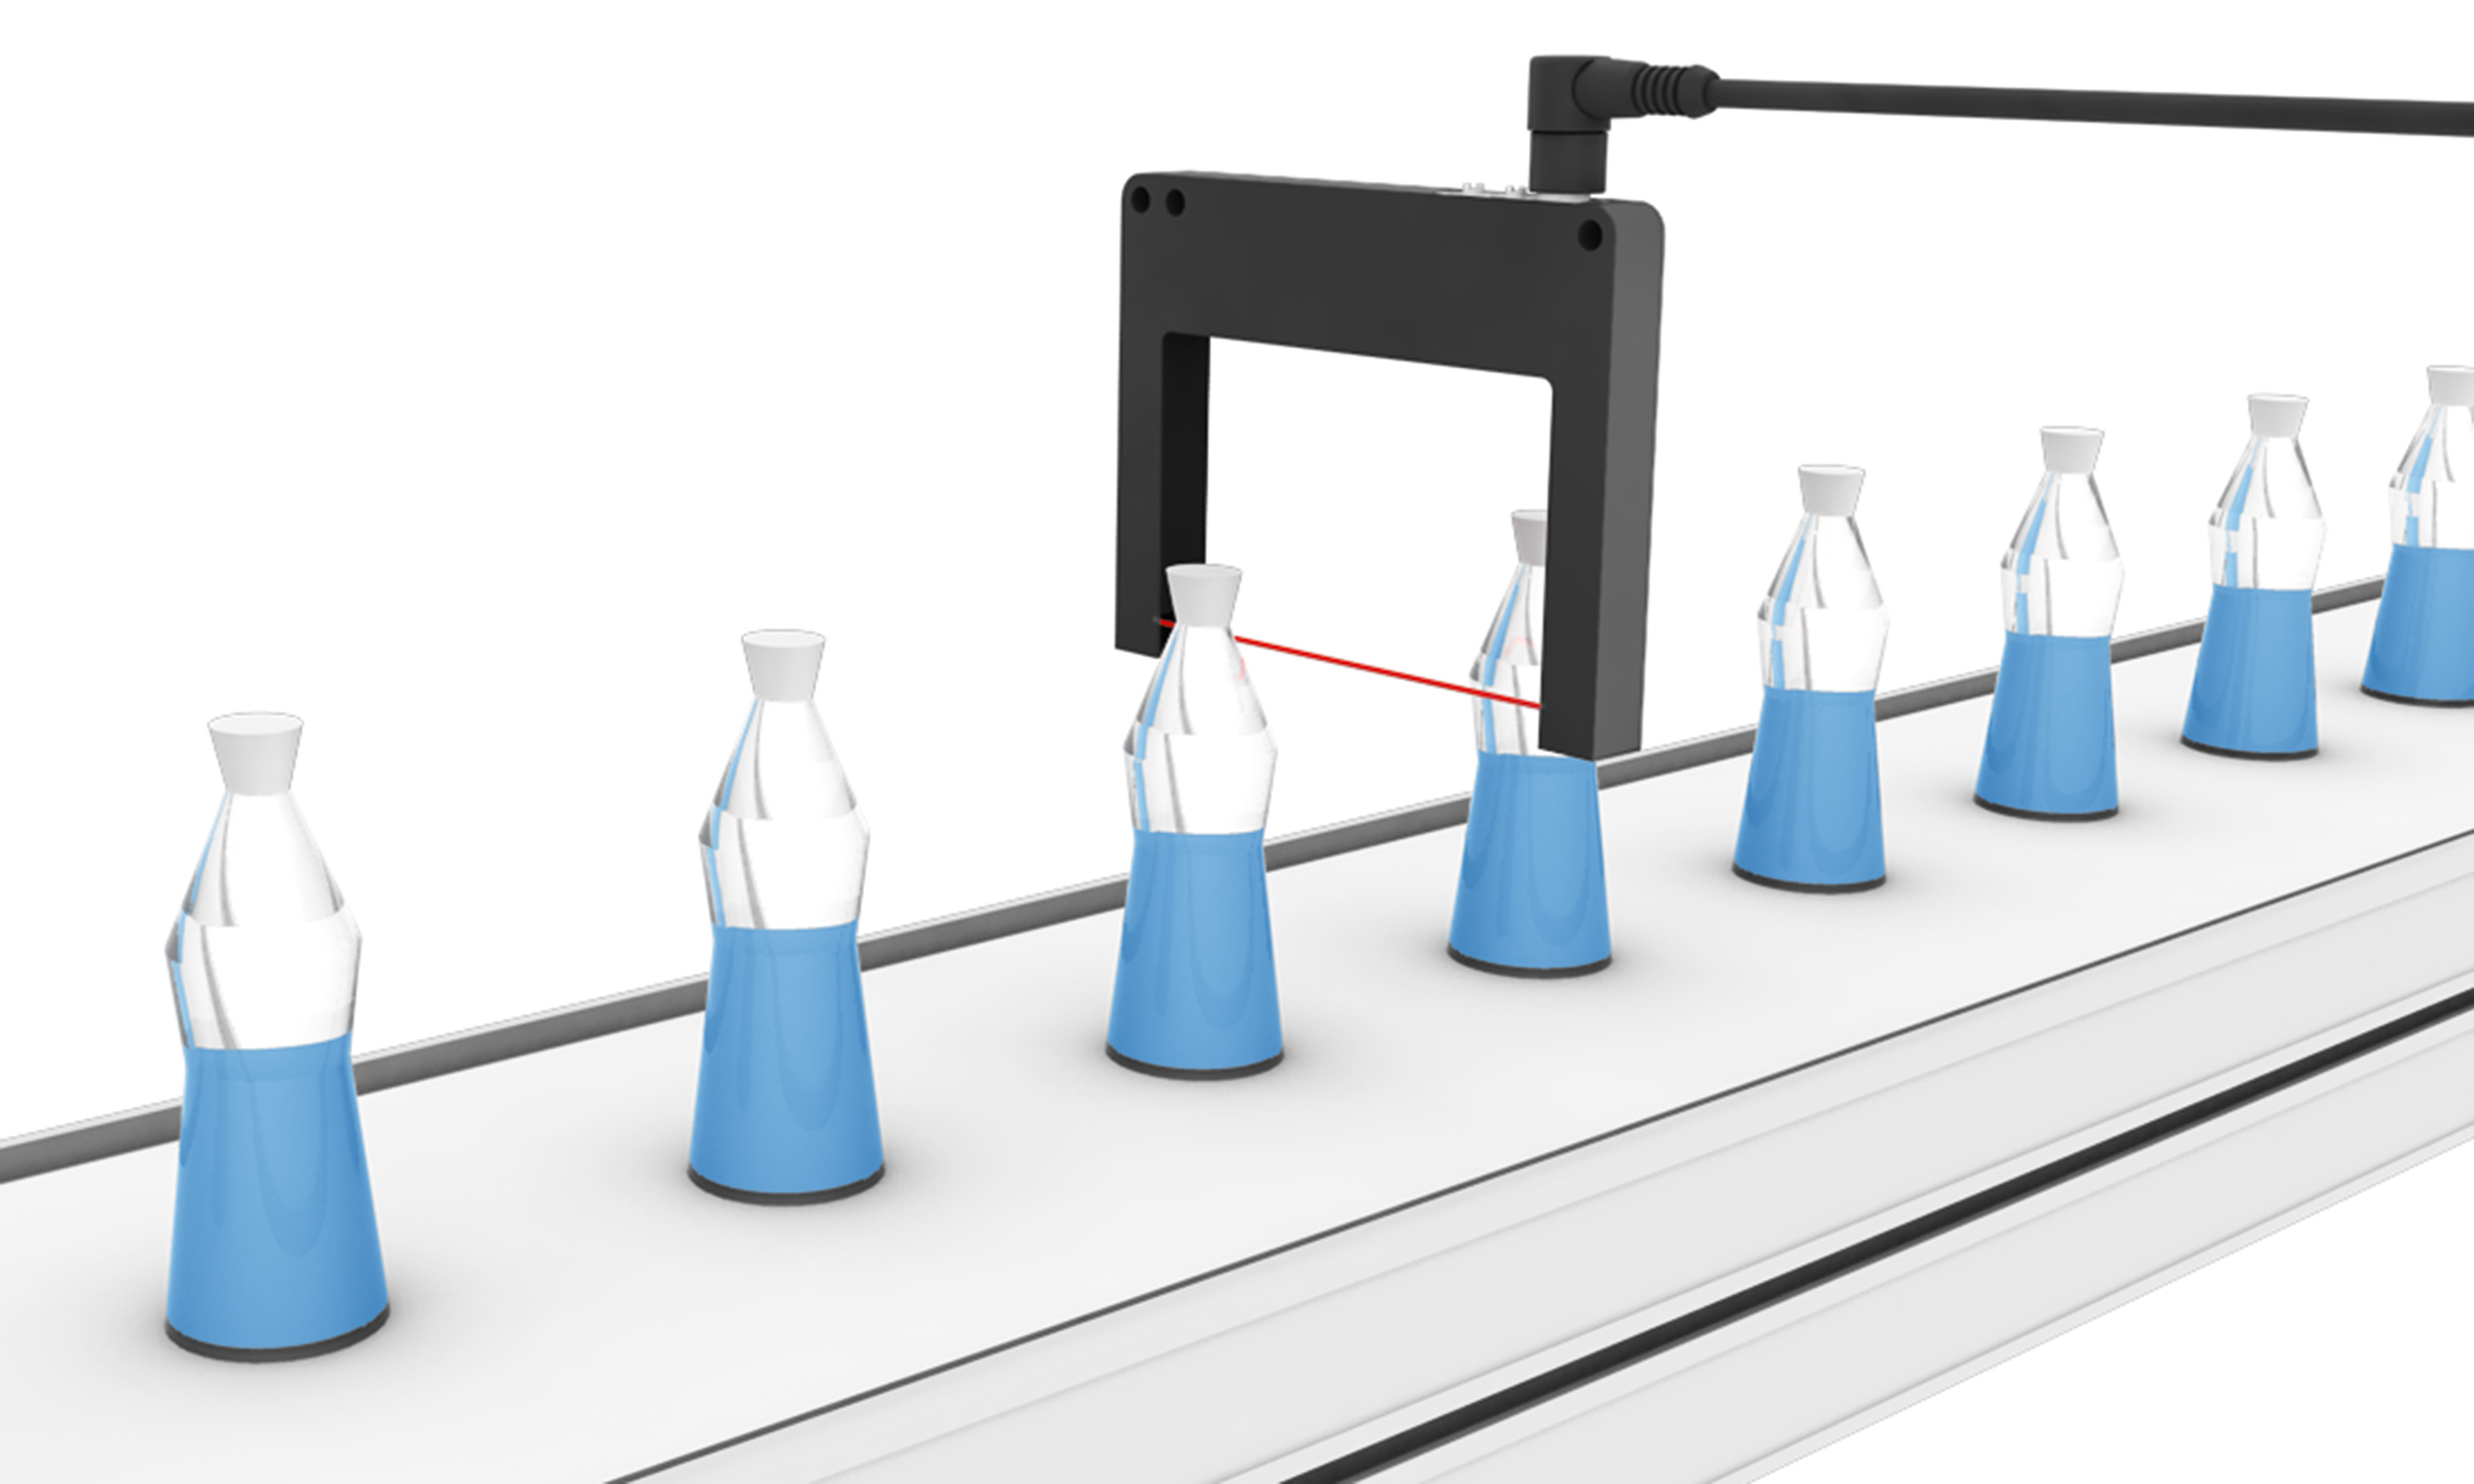 Riconoscimento del liquido su bottiglie trasparenti image